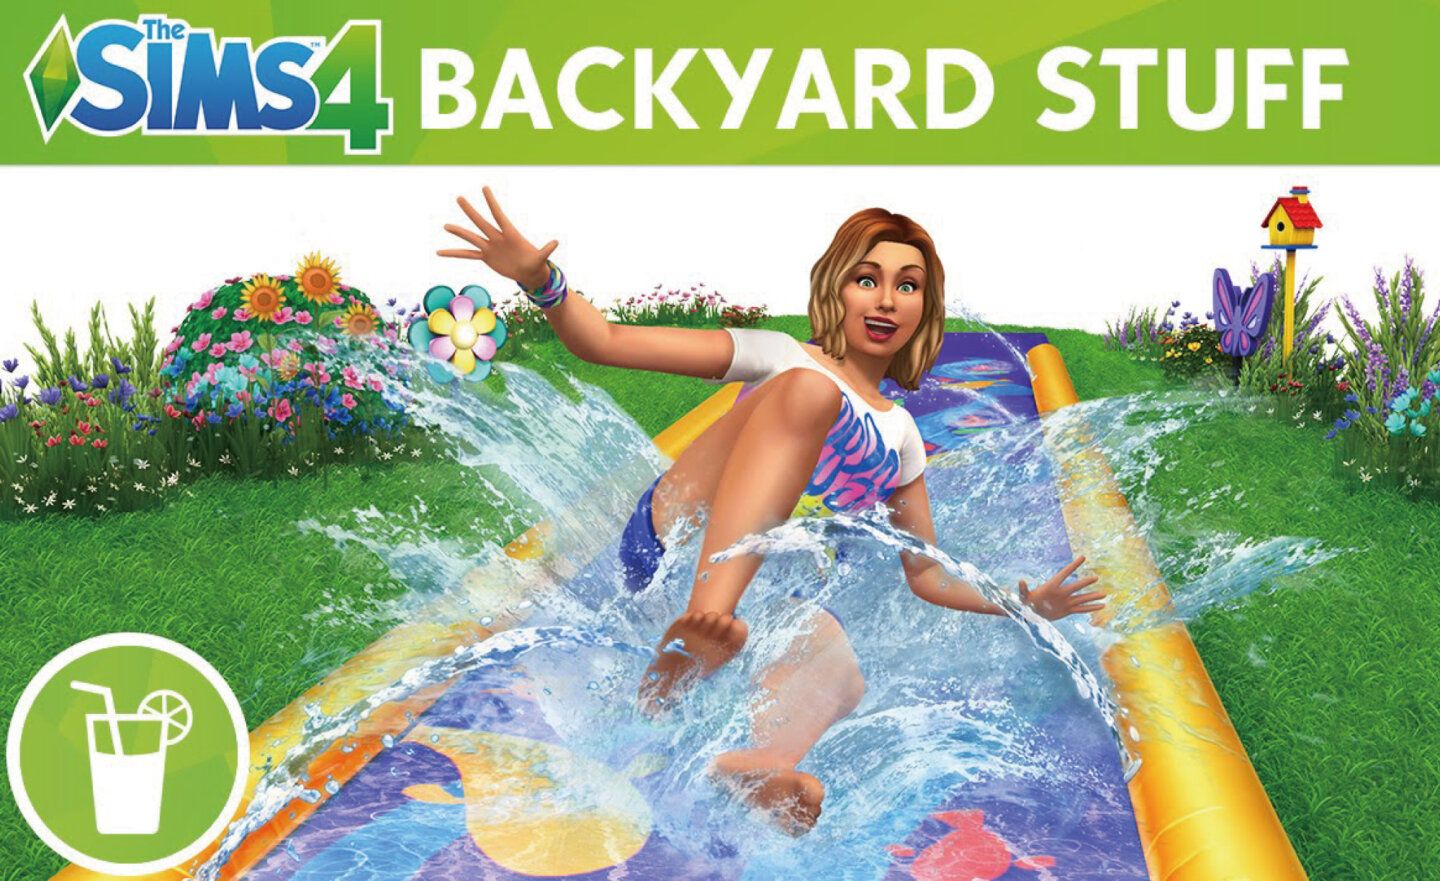 【限時免費】Steam、Epic、EA 聯合放送《The Sims 4 模擬市民4》休閒後院組合 DLC